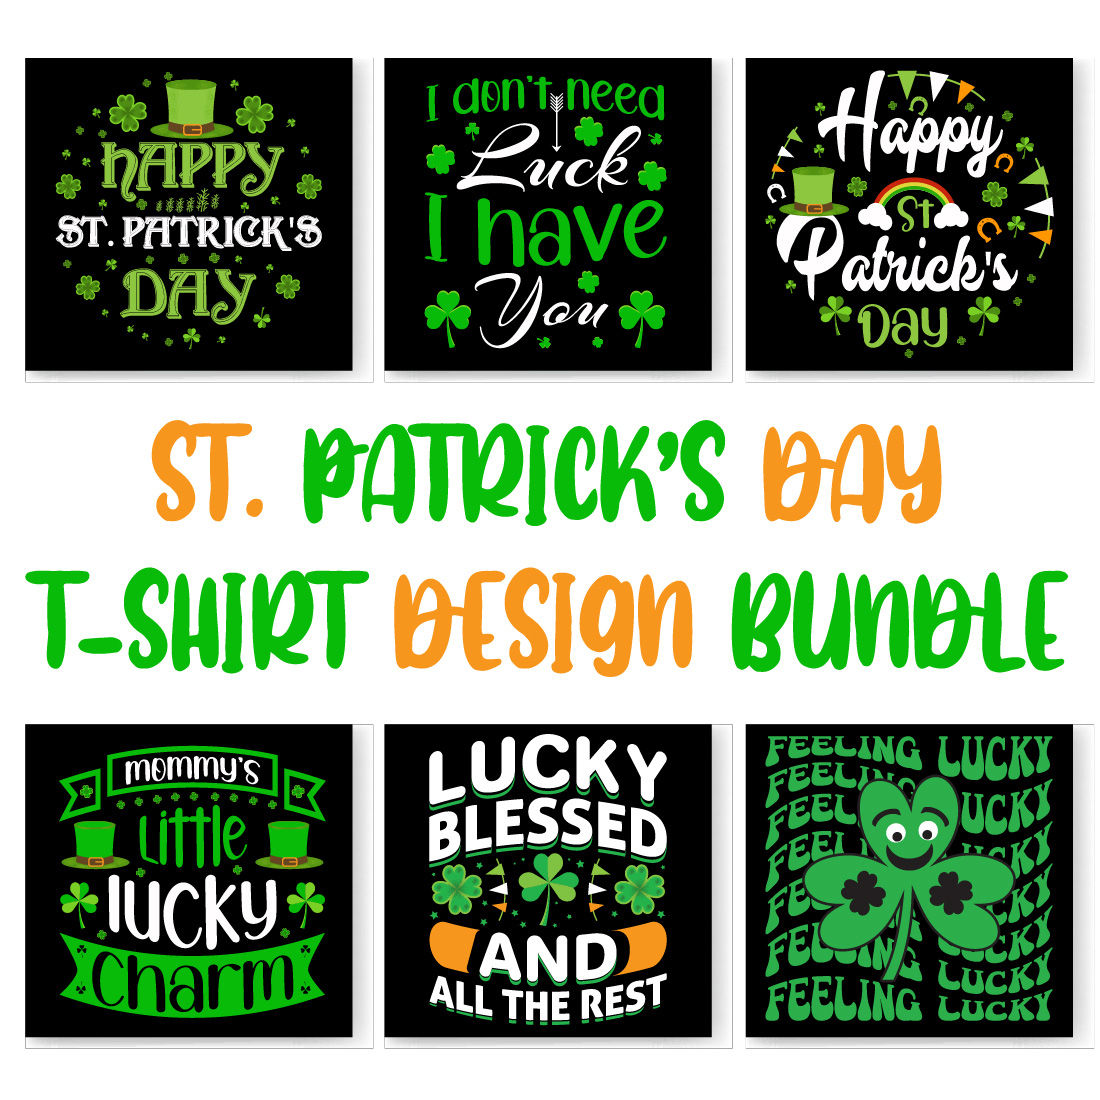 St patrick's day t - shirt design bundle.